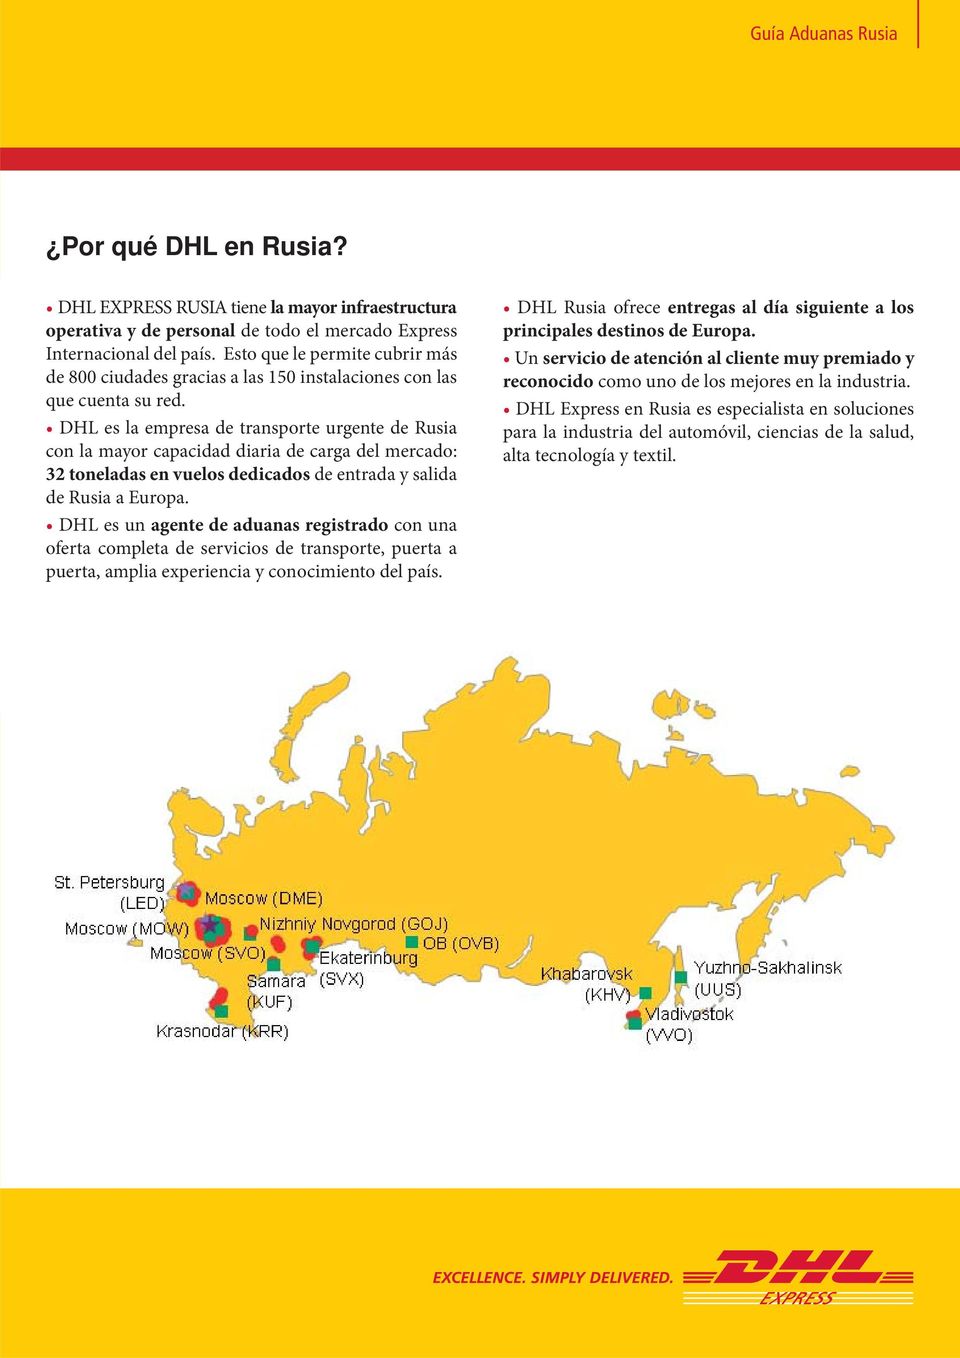 DHL es la empresa de transporte urgente de Rusia con la mayor capacidad diaria de carga del mercado: 32 toneladas en vuelos dedicados de entrada y salida de Rusia a Europa.